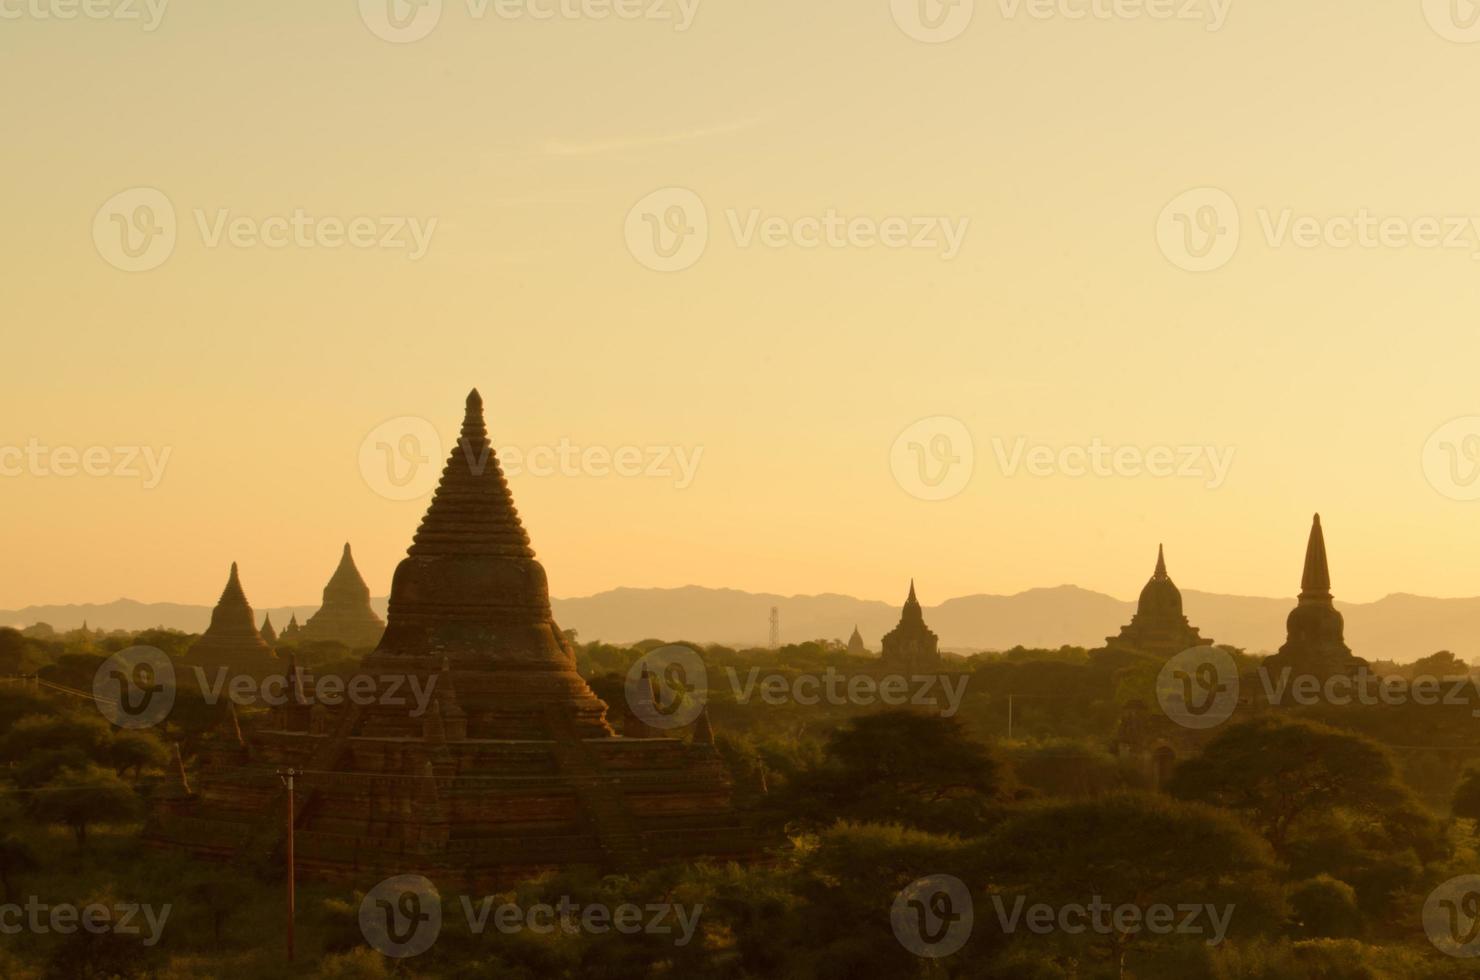 pagode a Bagan, Myanmar foto